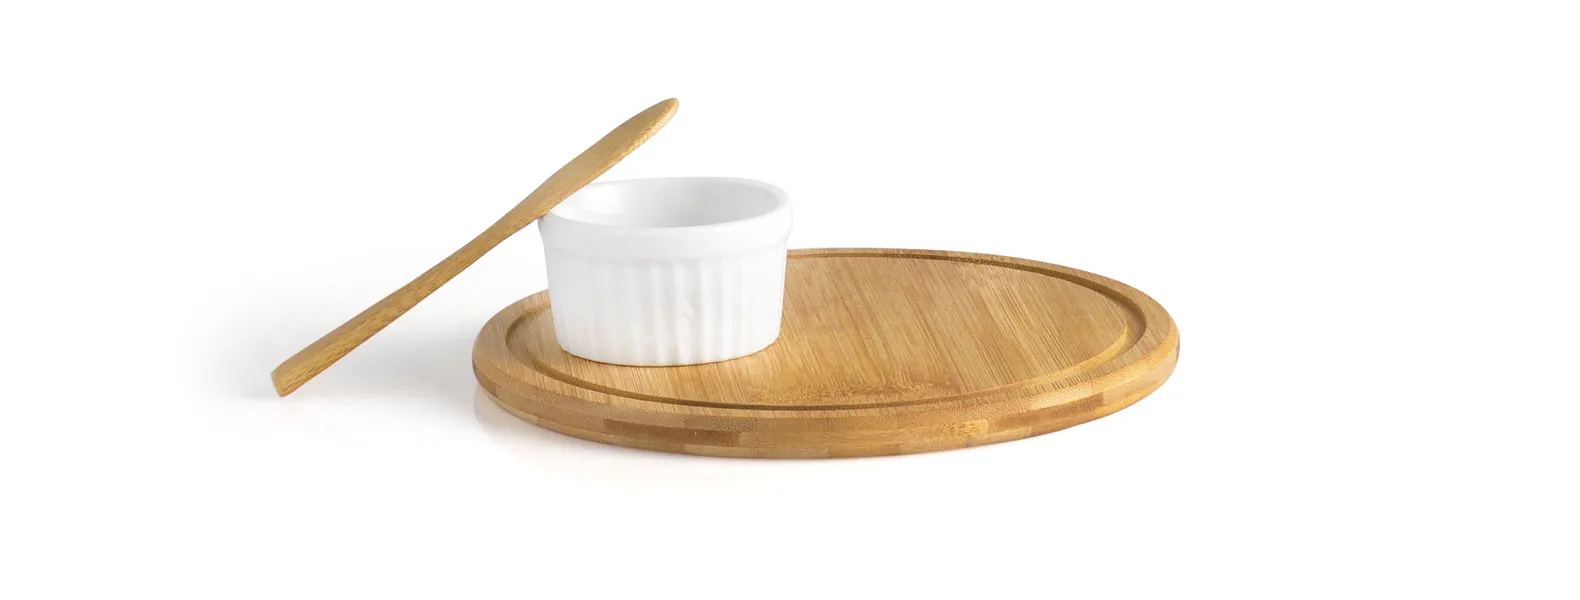 Conjunto para petiscos em bambu. Acompanha tábua e espátula em bambu, conta também com ramekin em porcelana.